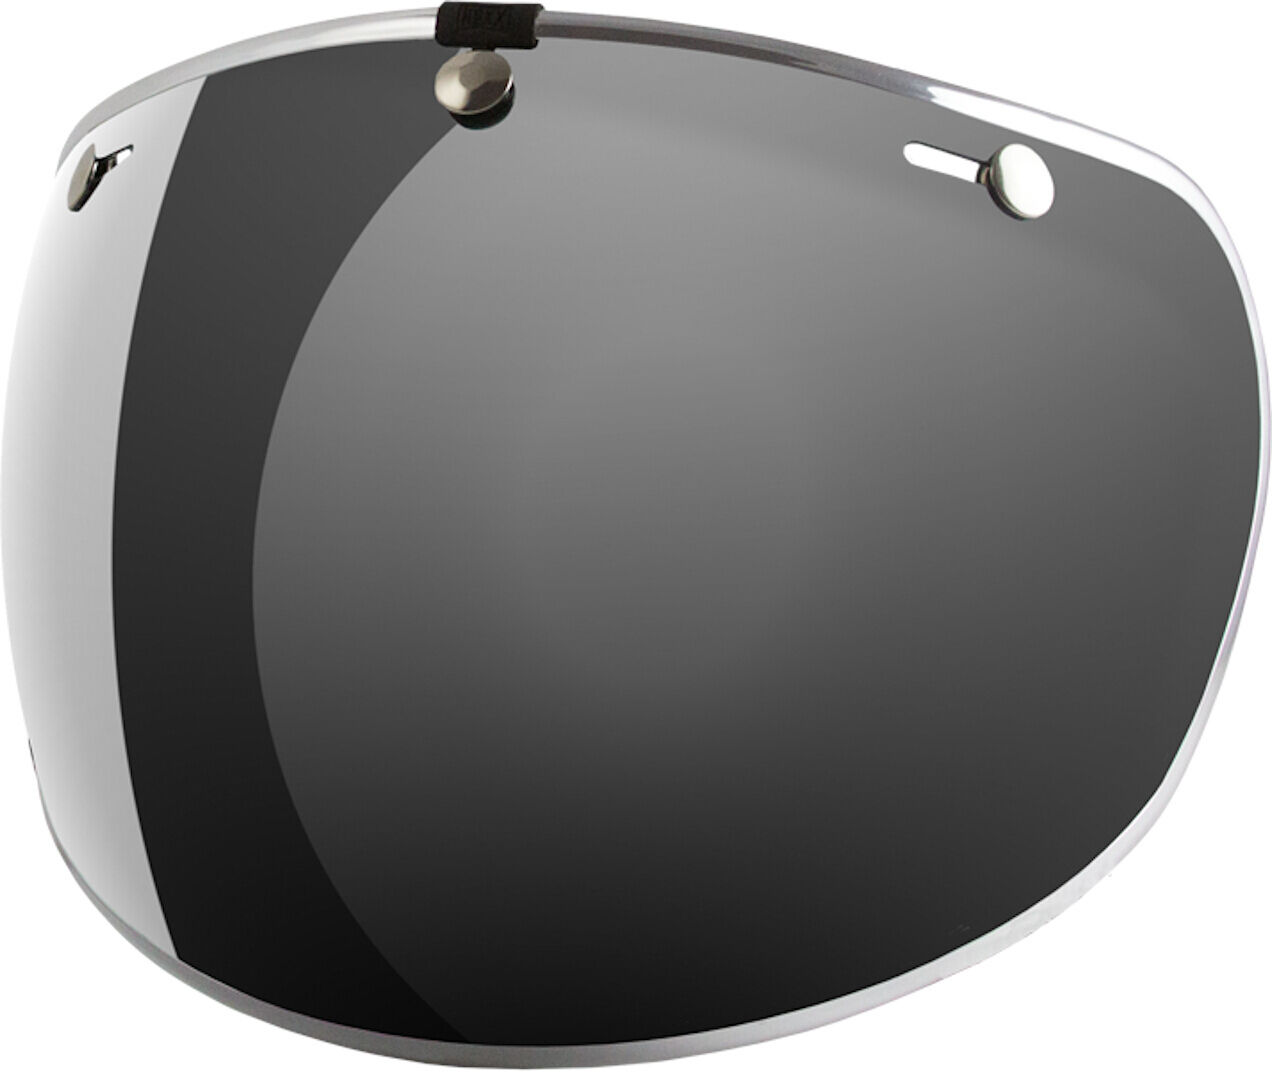 NEXX X.G20 Mini visor de burbujas - Plata (un tamaño)